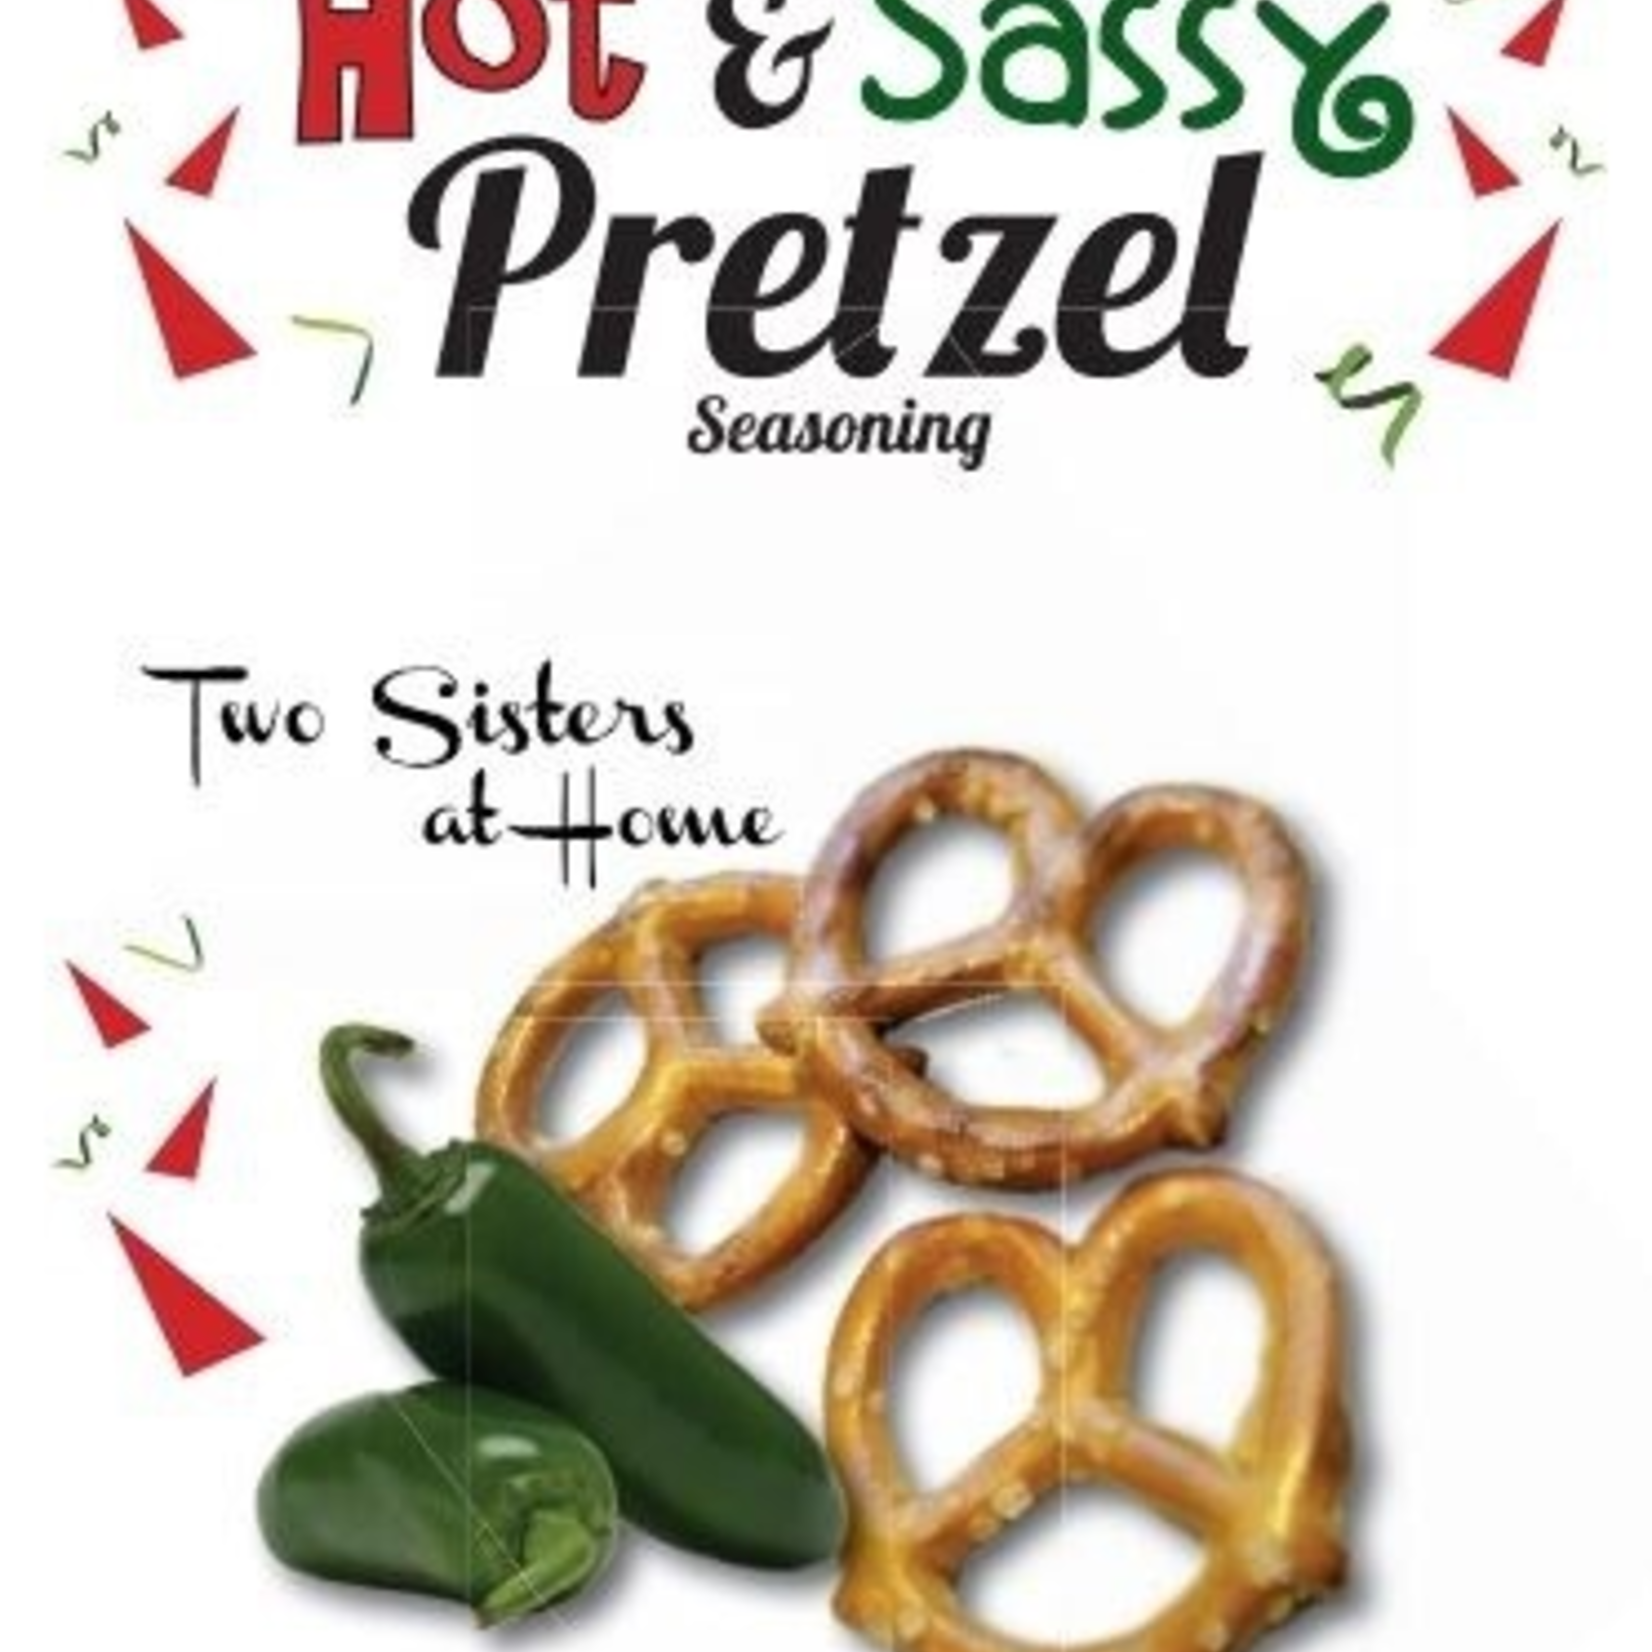 Two Sisters at Home Hot & Sassy Pretzel Seasoning